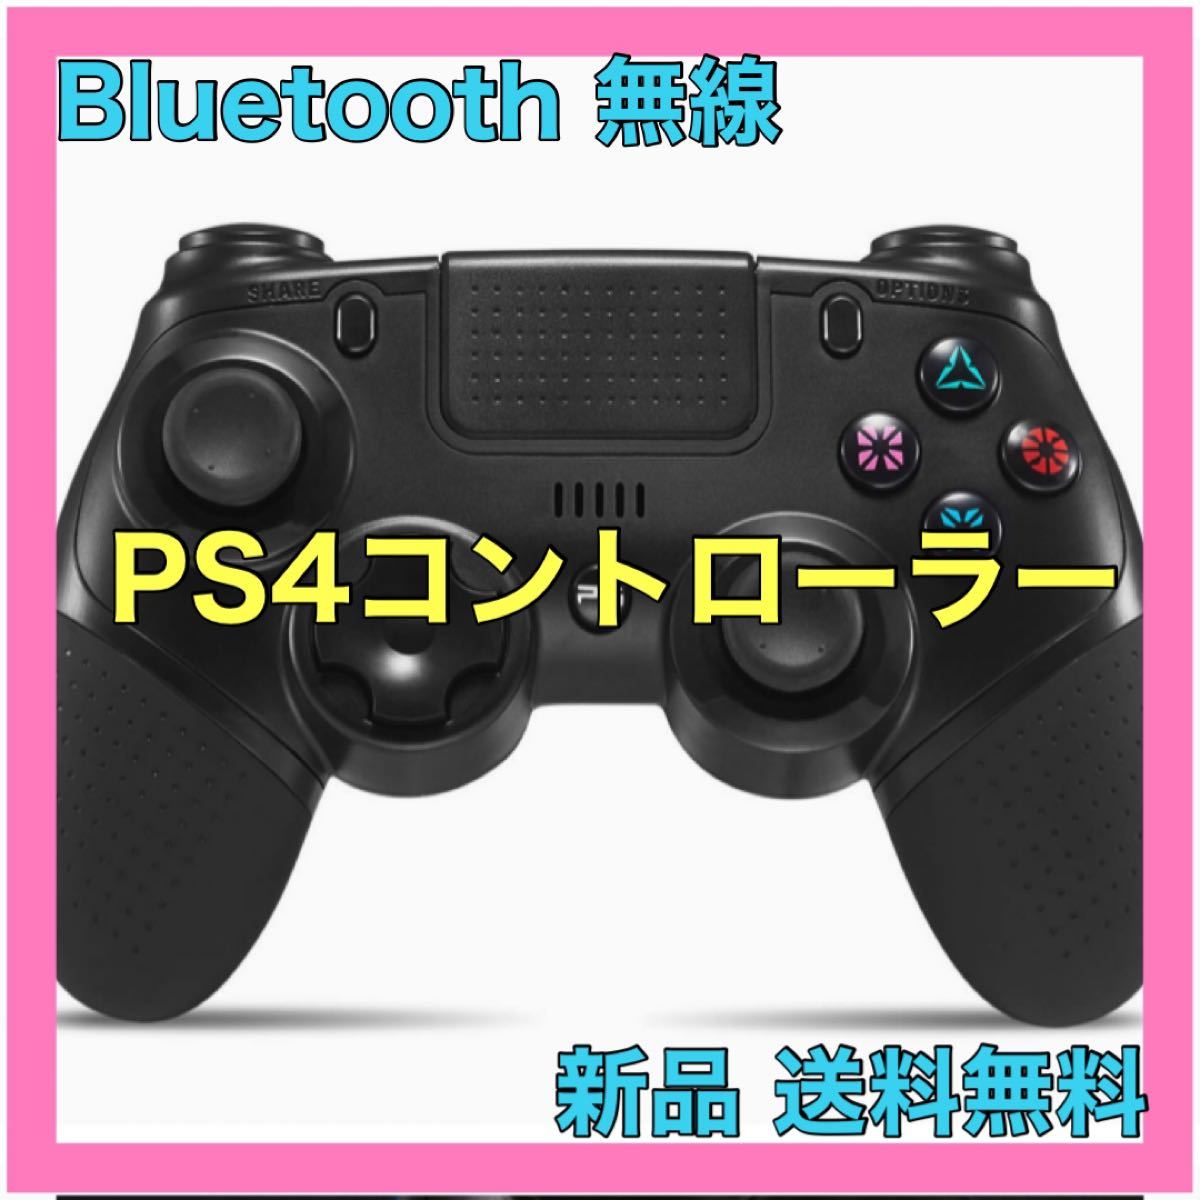 PS4コントローラー Bluetooth ワイヤレス ジャイロセンサー